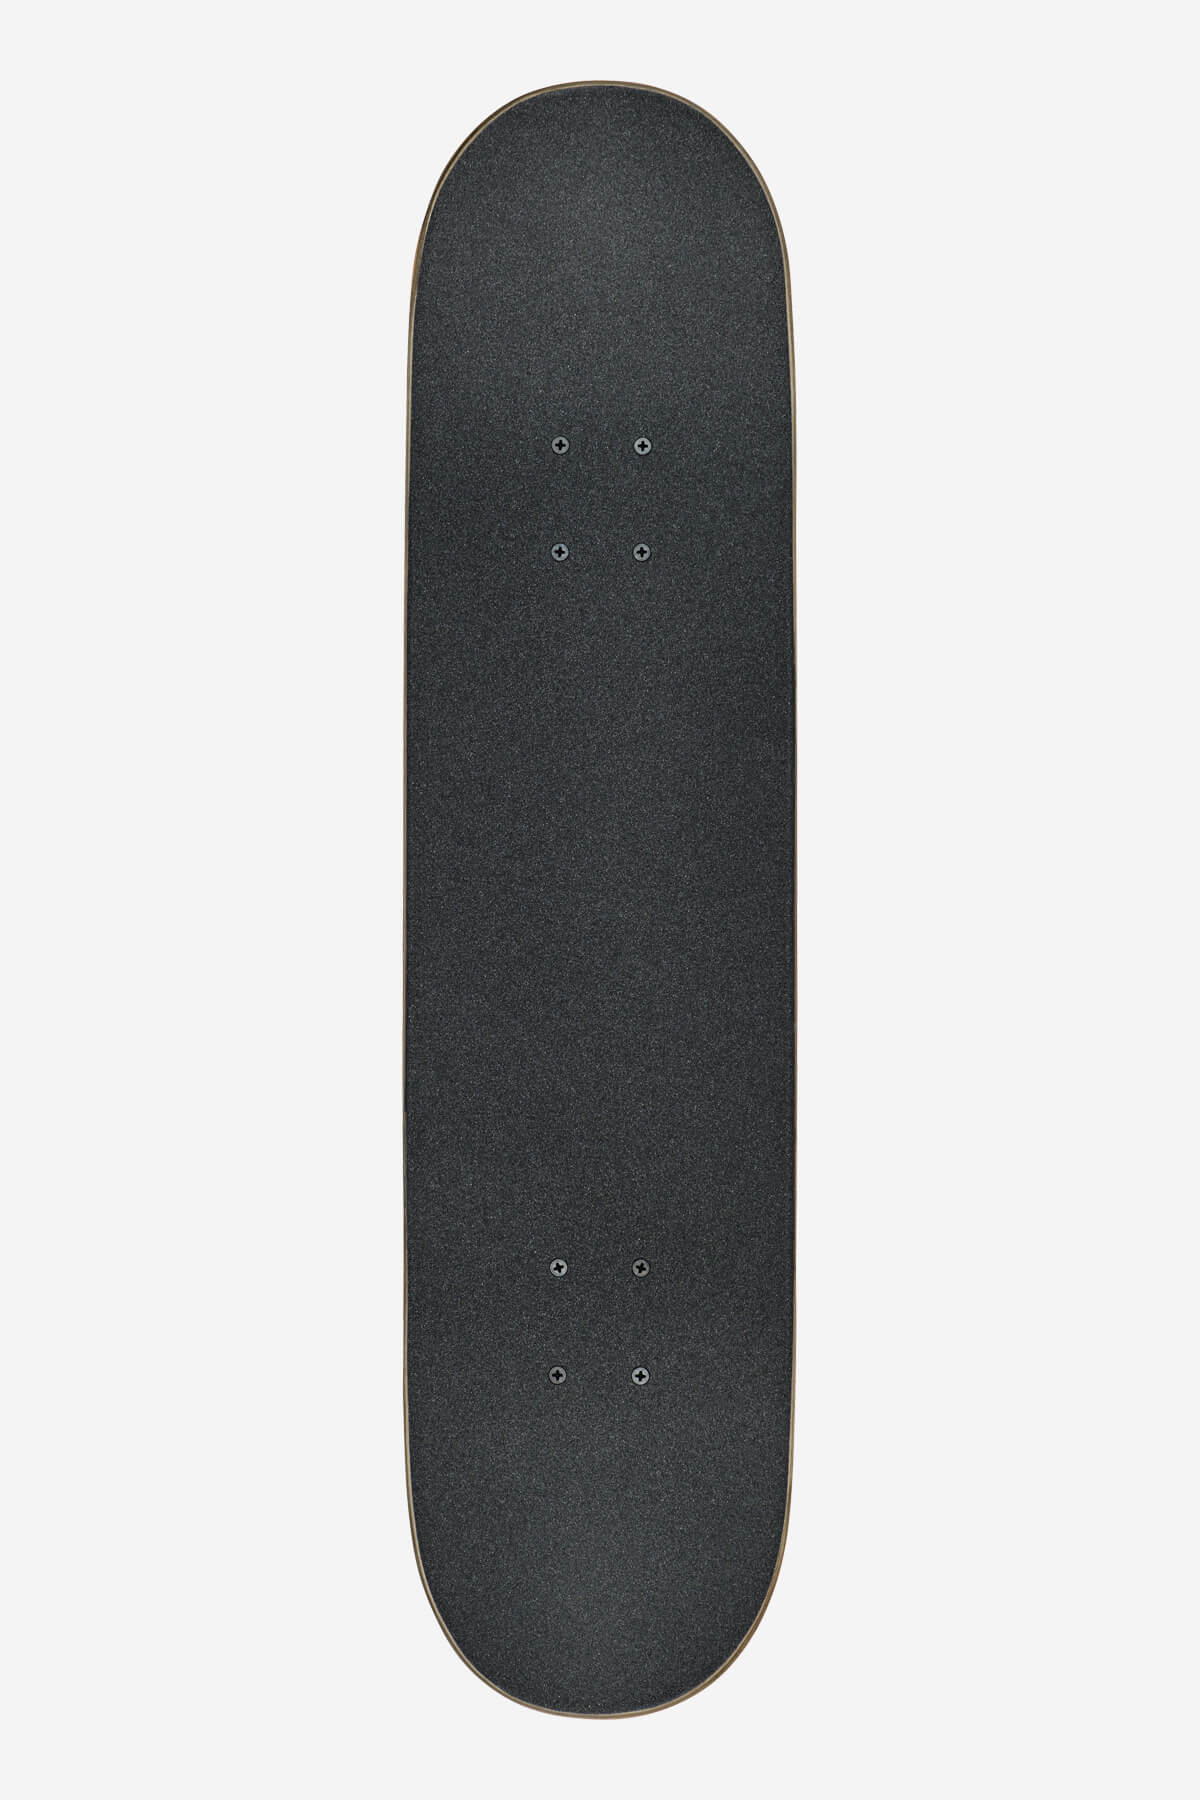 goodstock topaz 7,75" completo skateboard